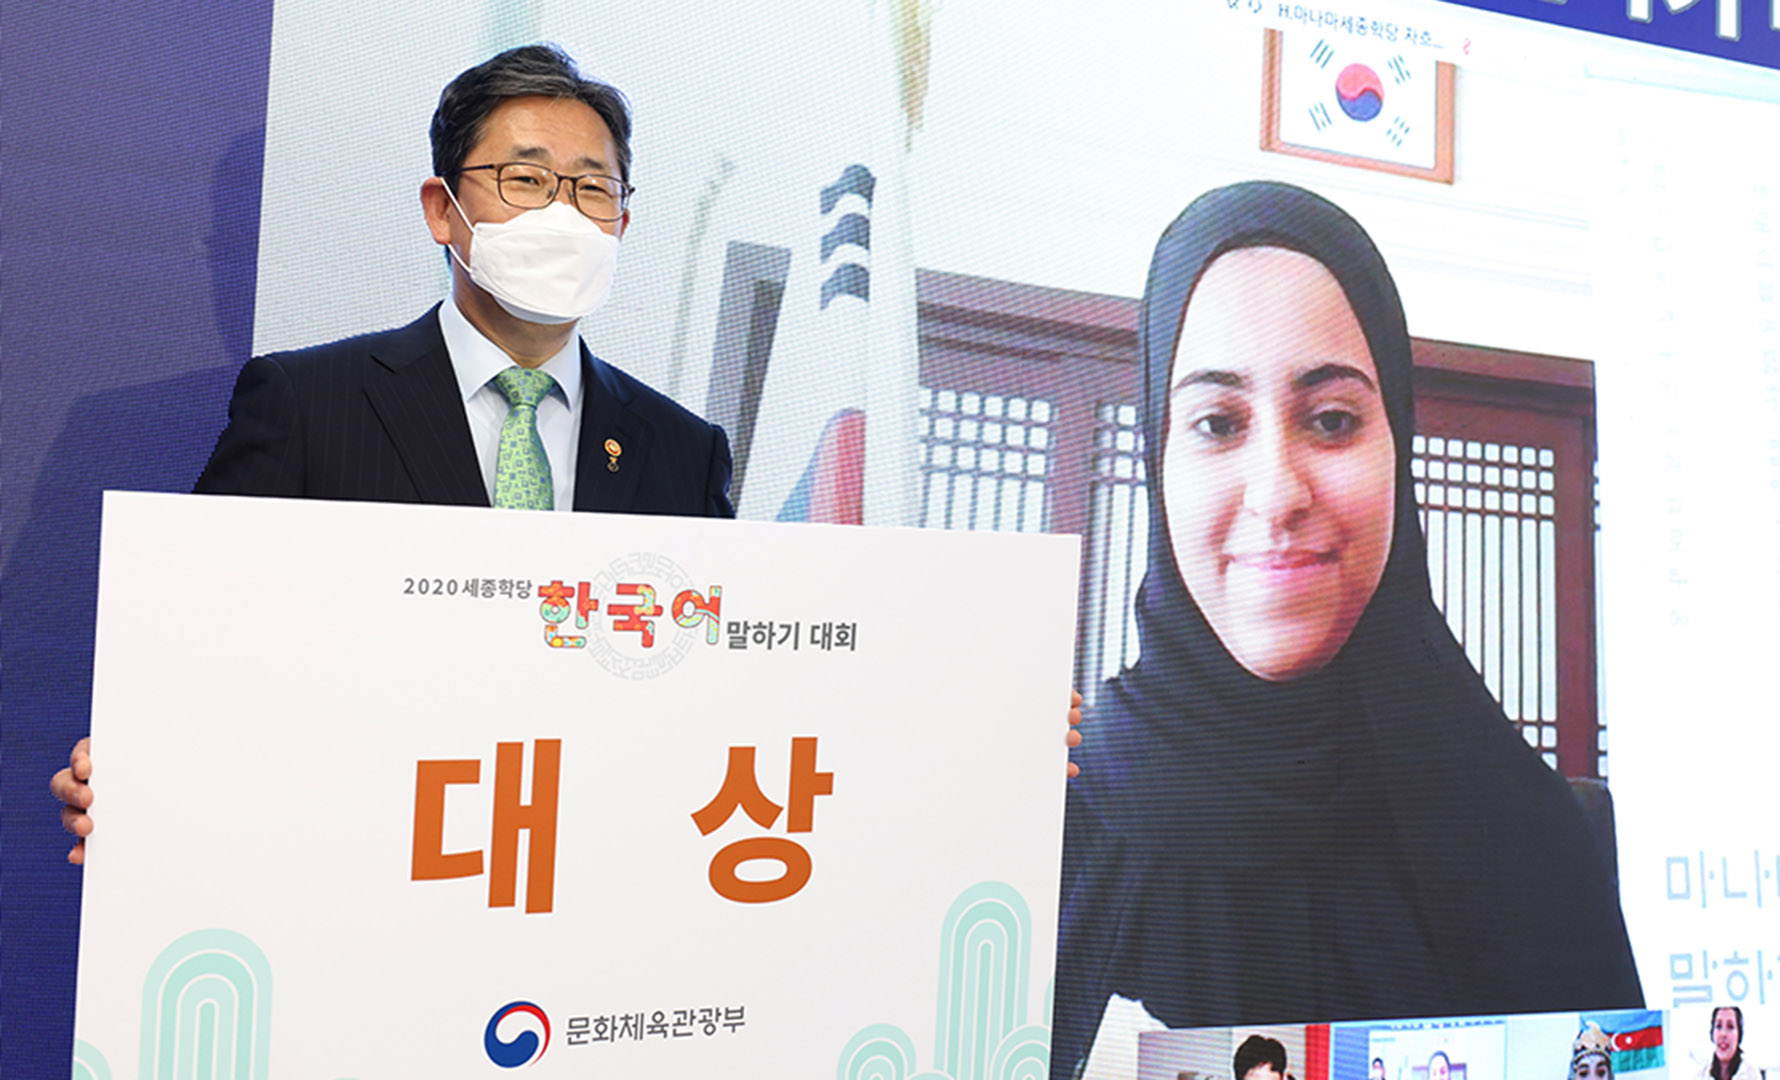 “세계에서 가장 한국어를 잘하는 외국인은 나야 나”(2020. 10. 08.)